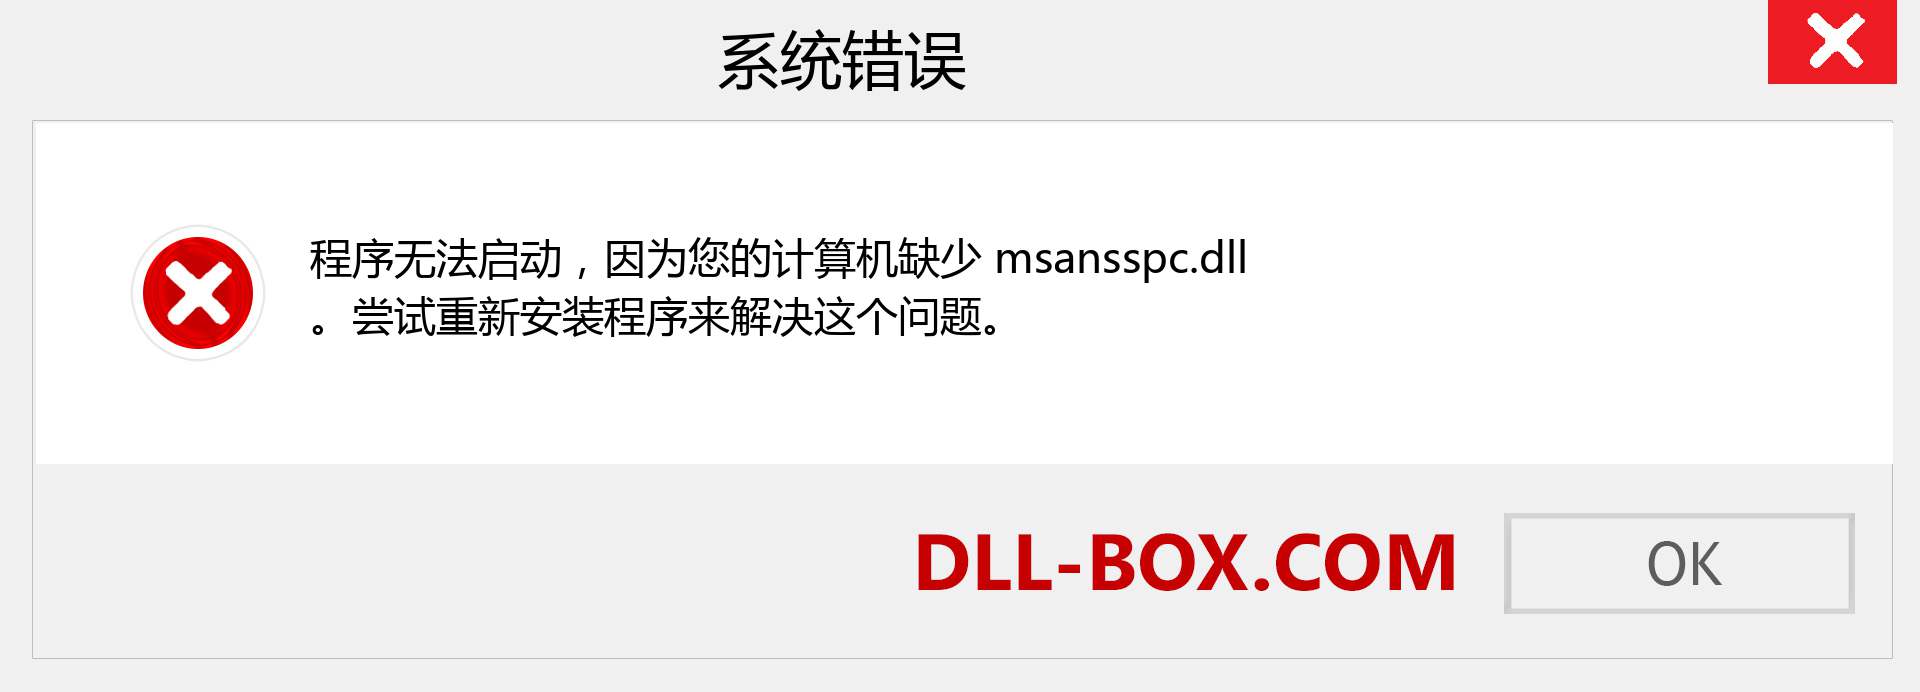 msansspc.dll 文件丢失？。 适用于 Windows 7、8、10 的下载 - 修复 Windows、照片、图像上的 msansspc dll 丢失错误